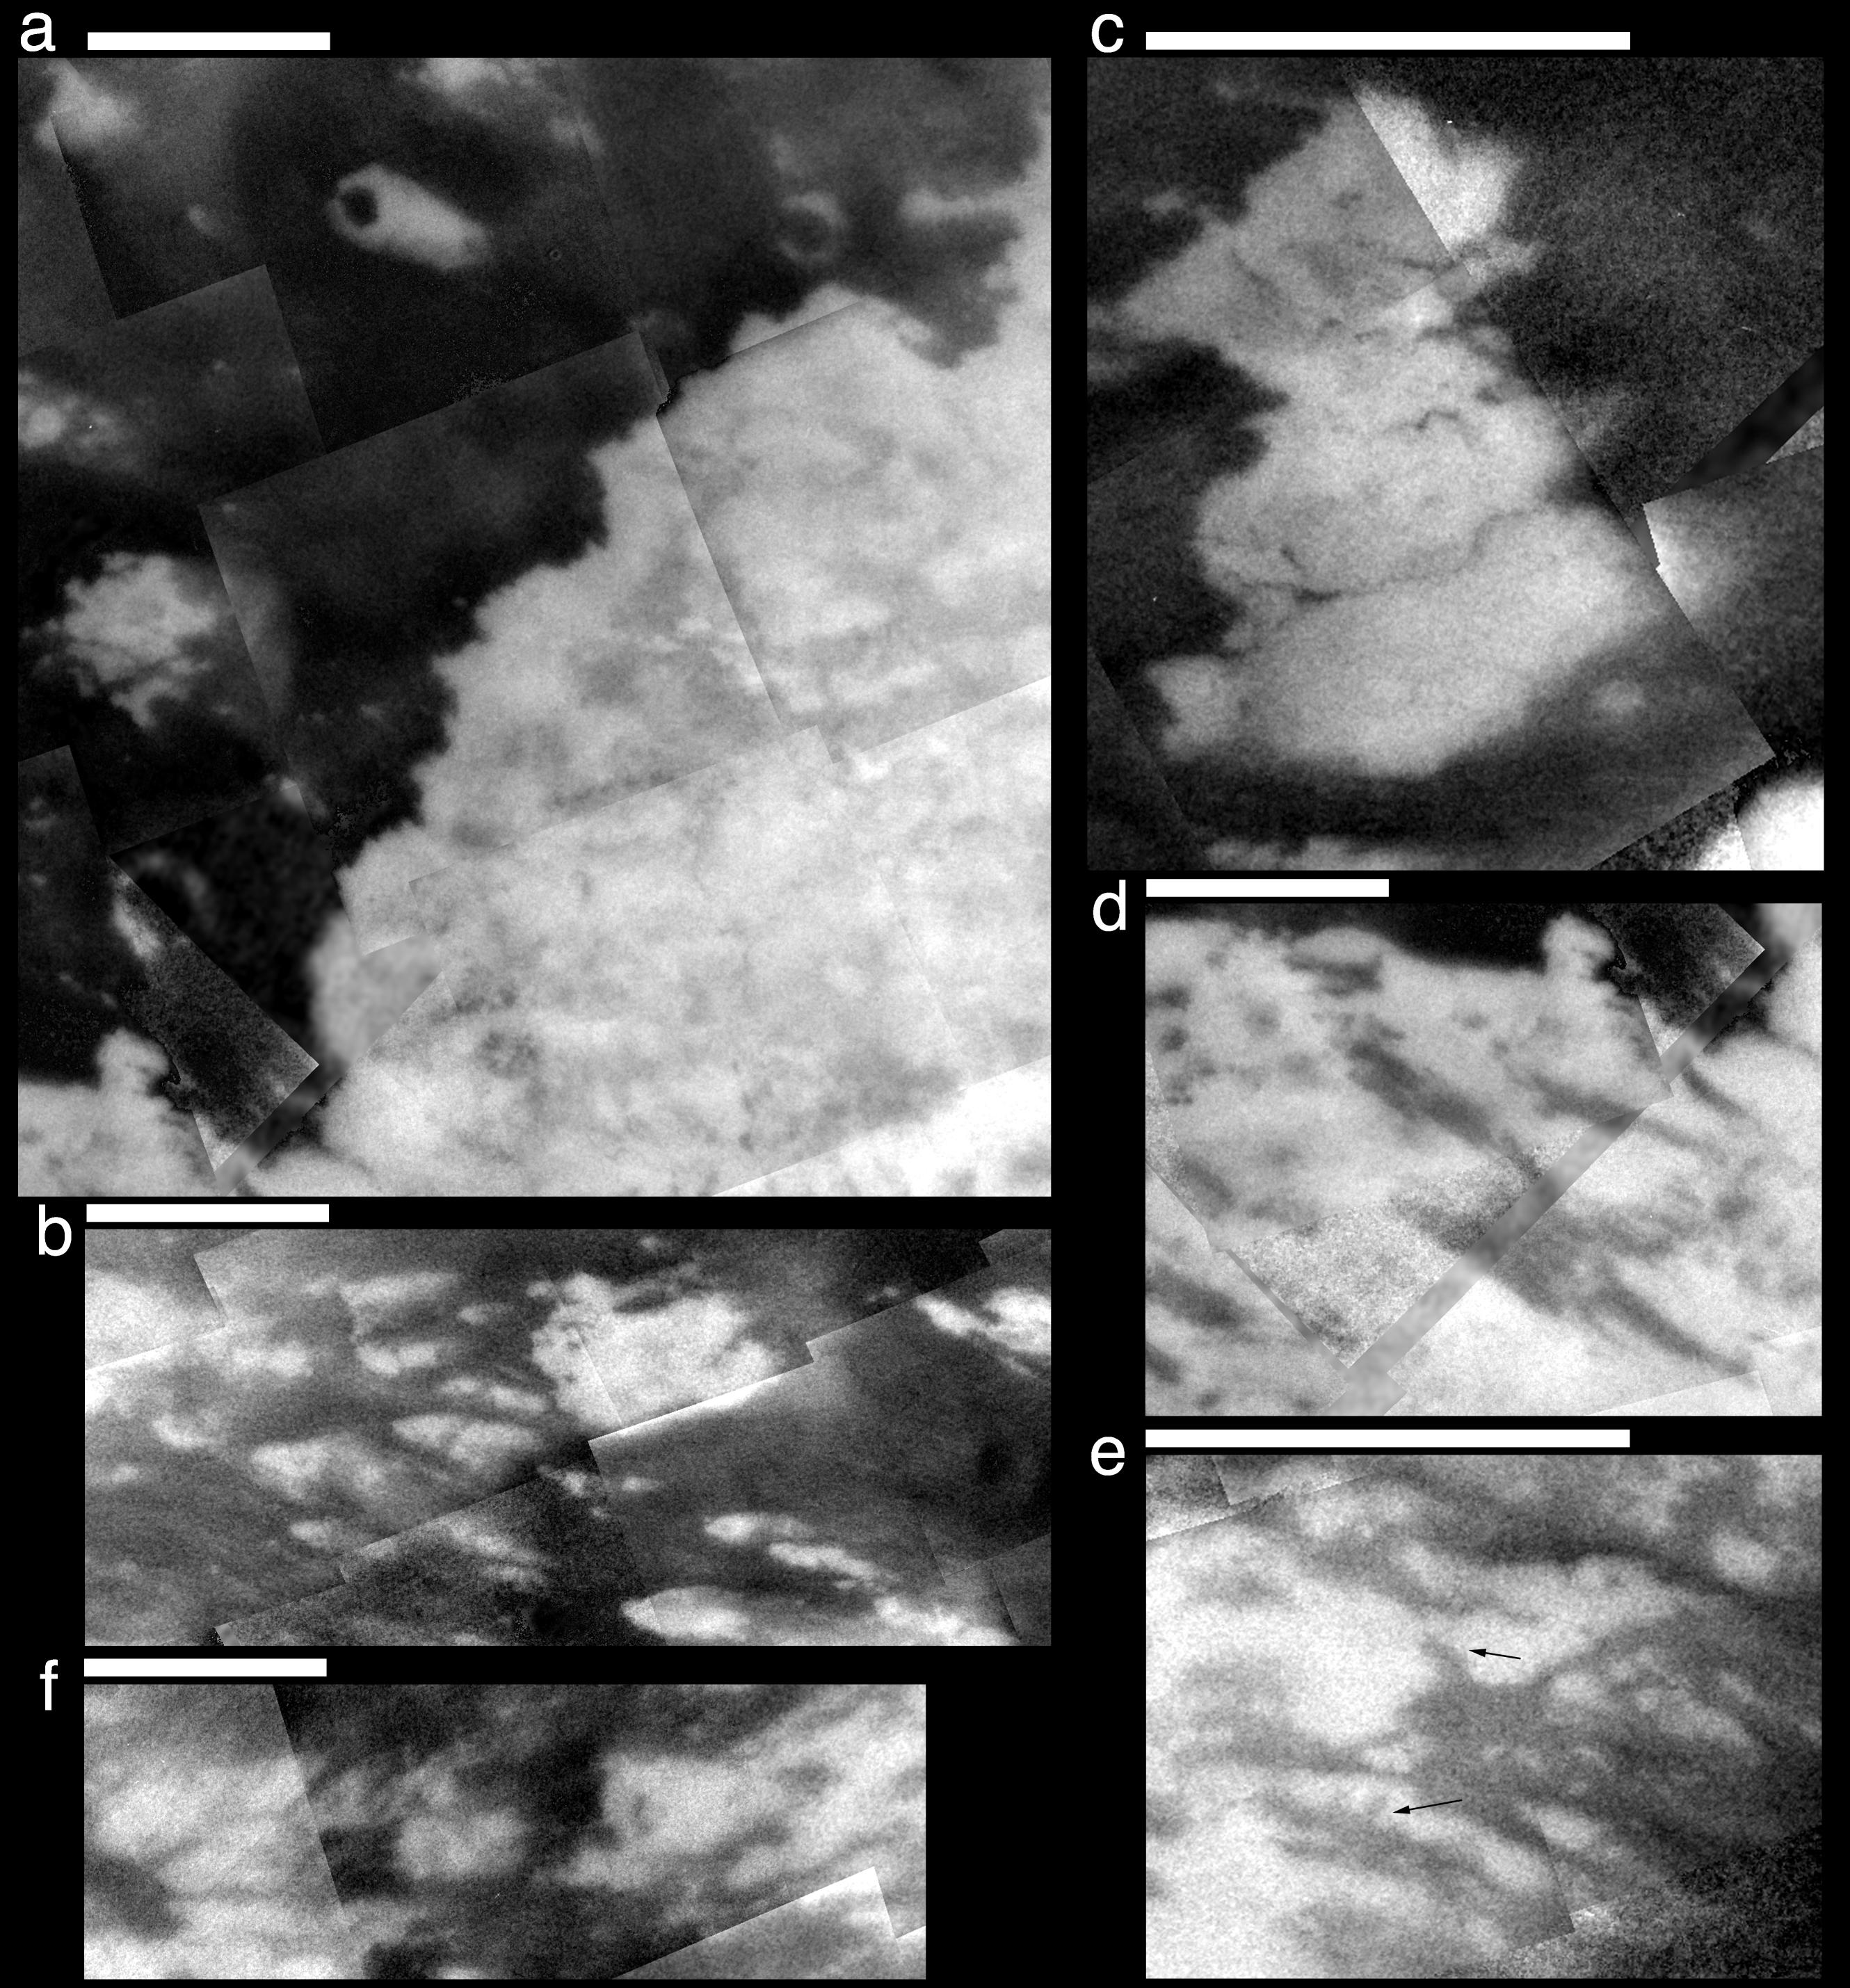 Six close-up views of Titan's surface